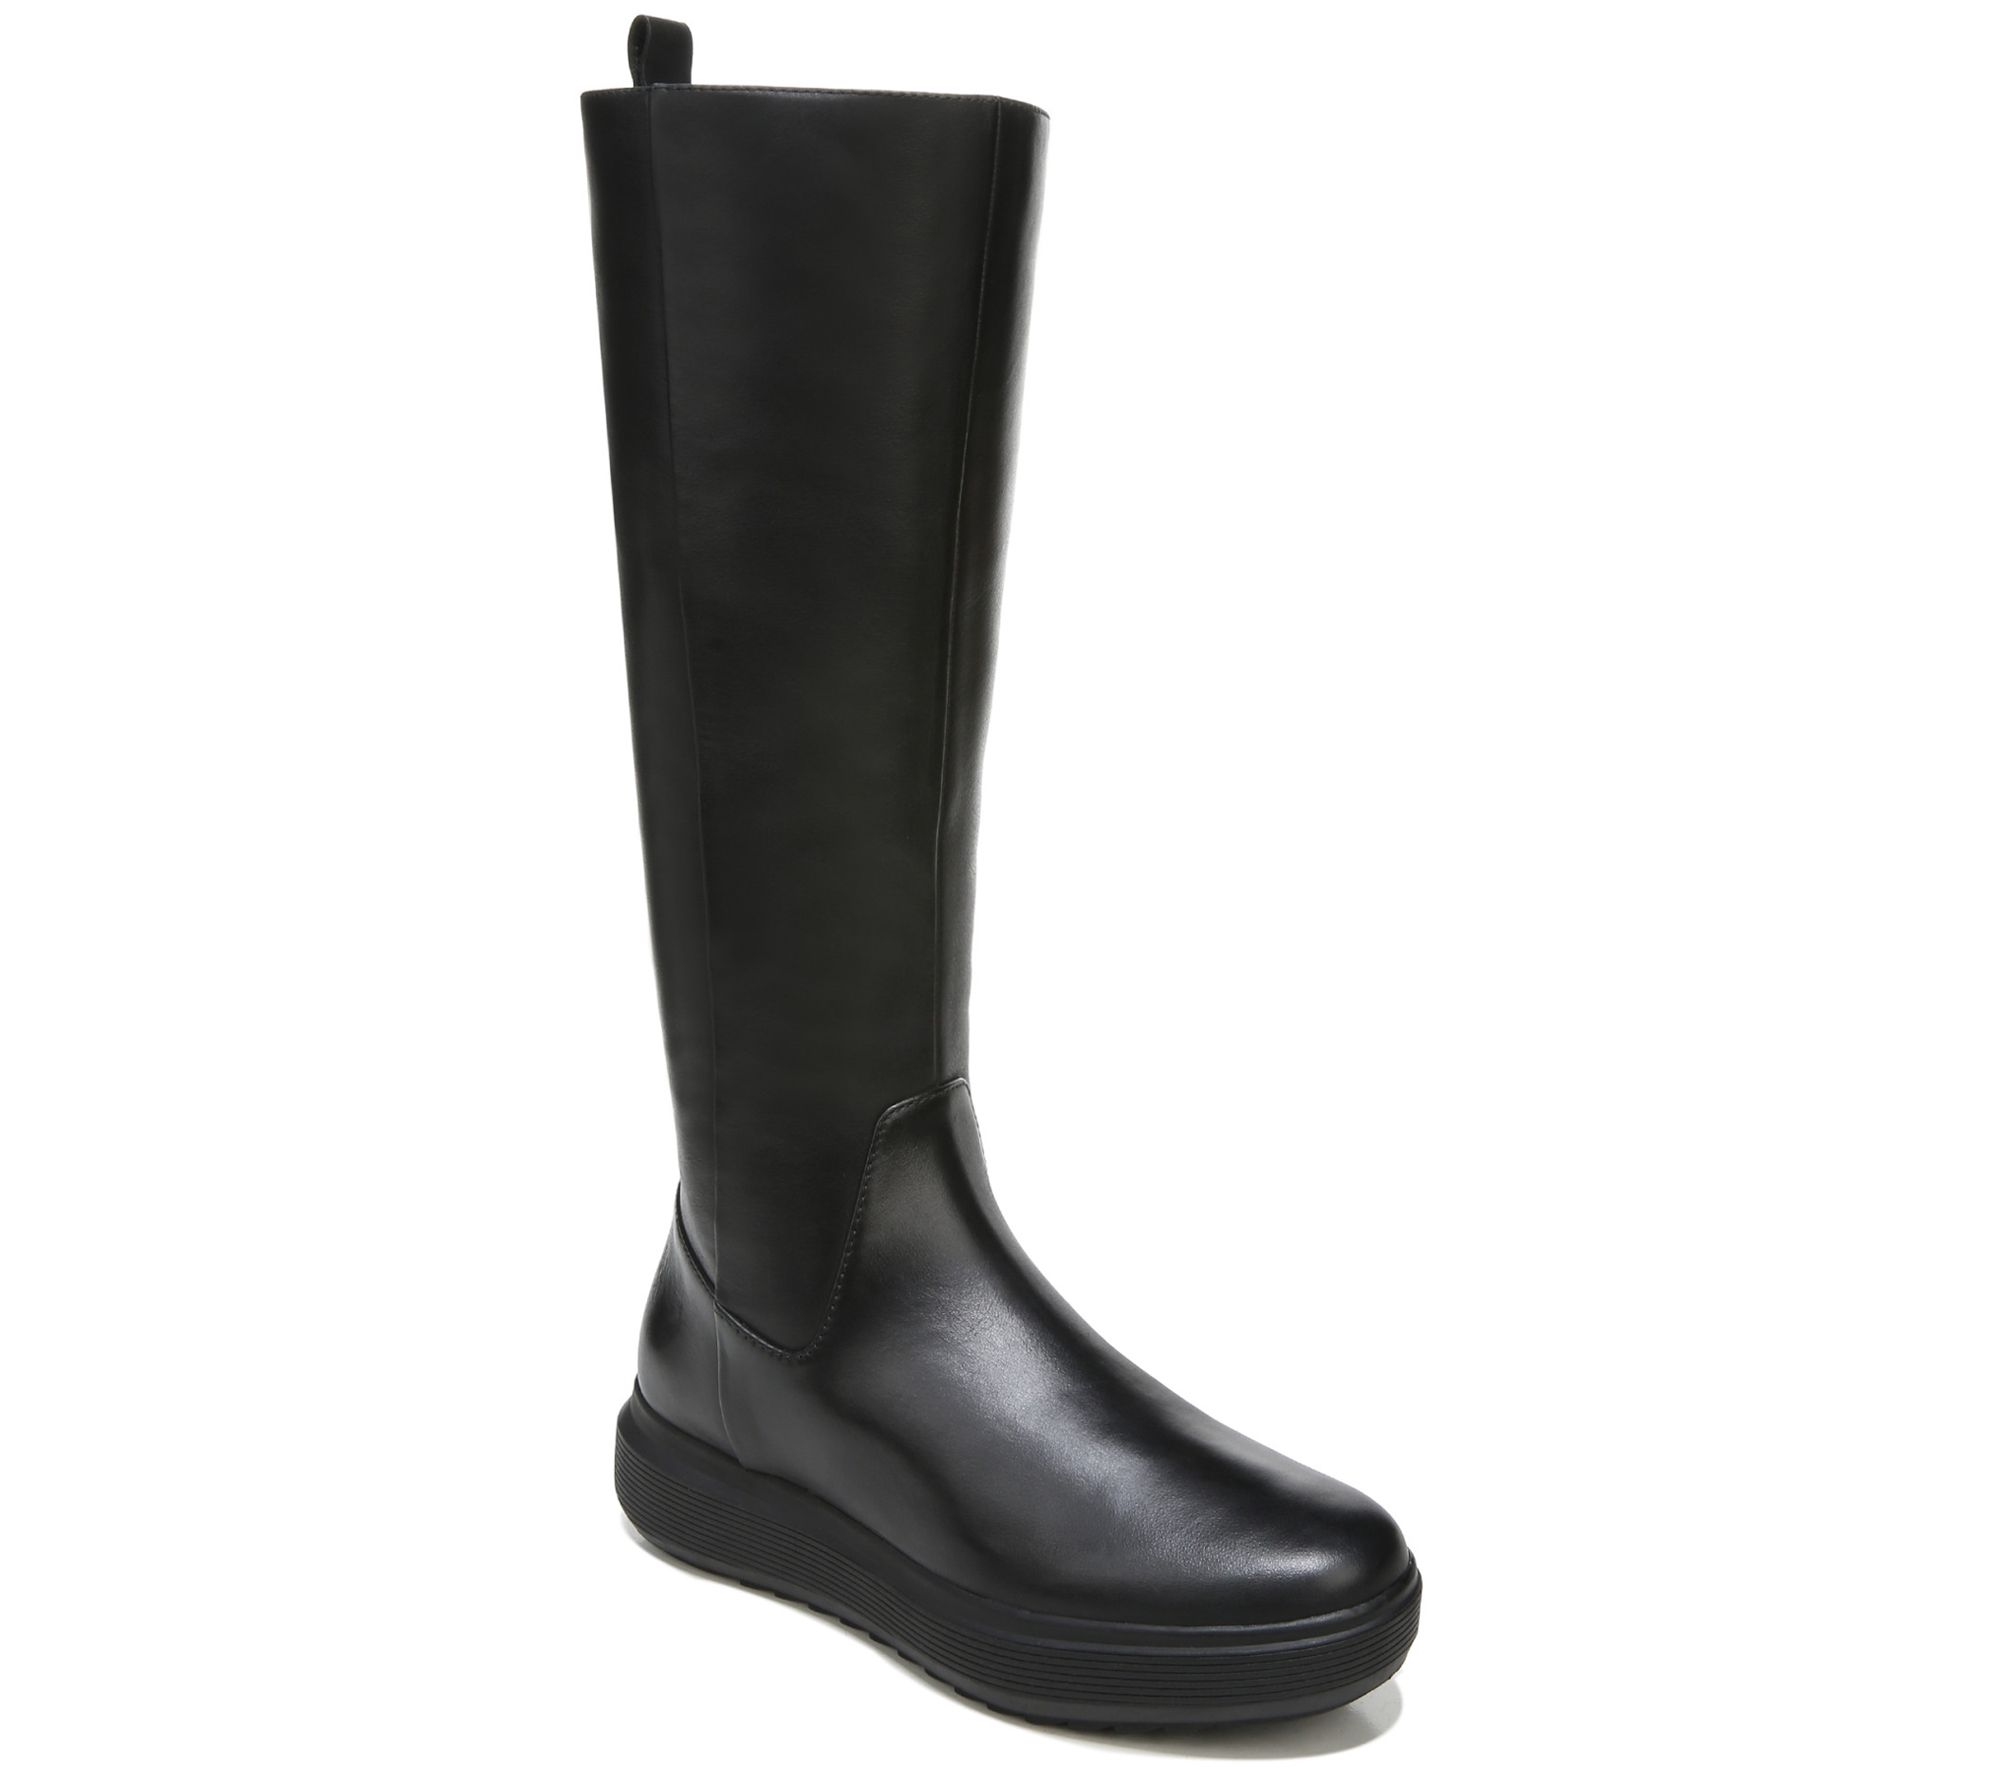 Naturalizer Zipper High Shaft Boots - Torence - QVC.com